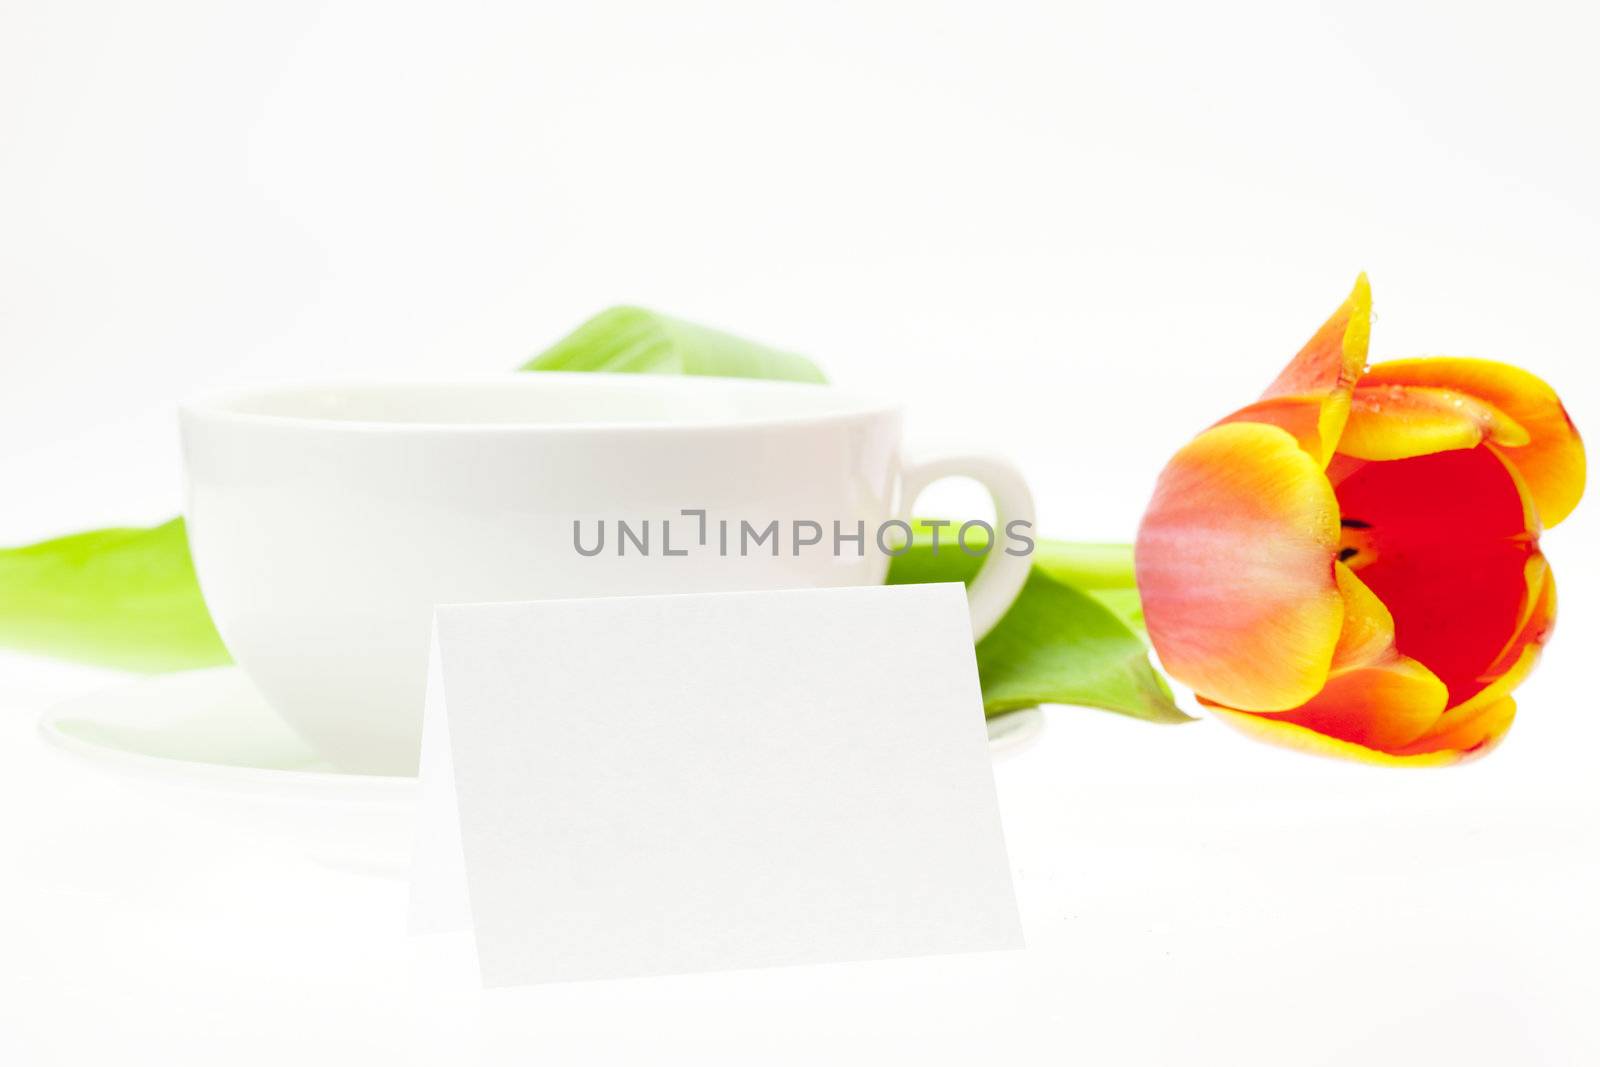 tulip and white mug isolated on white